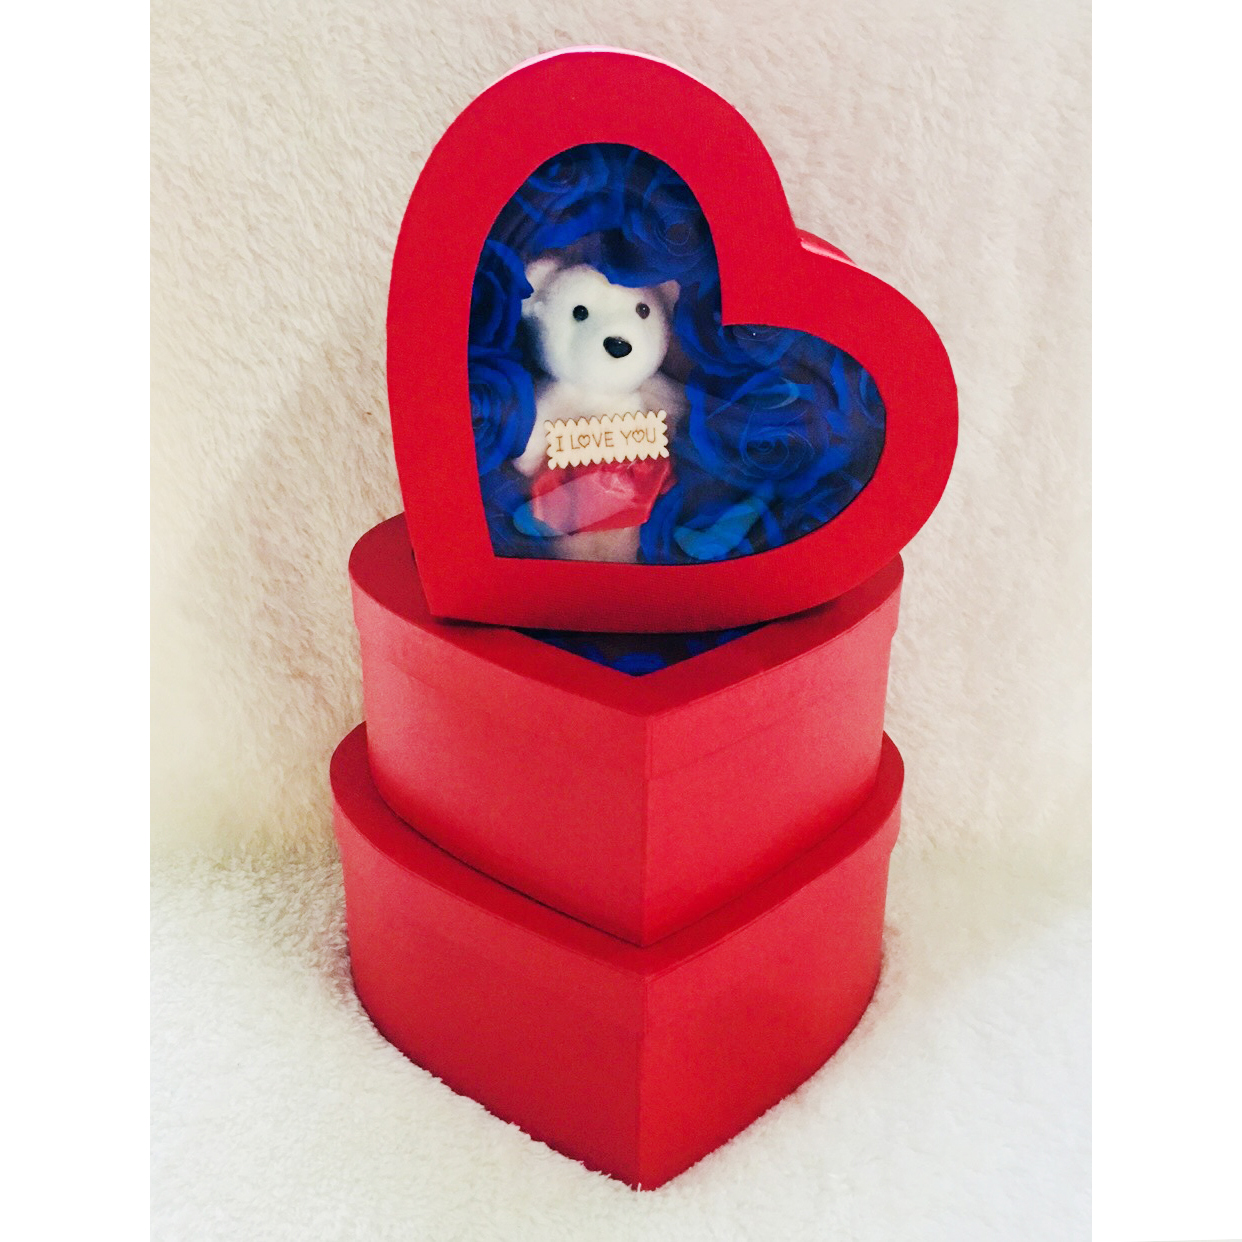 Quà lưu niệm tình yêu trái tim màu đỏ, hoa sáp màu xanh, gấu bông, quà tặng valentine, quà tặng sinh nhật siêu đẹp